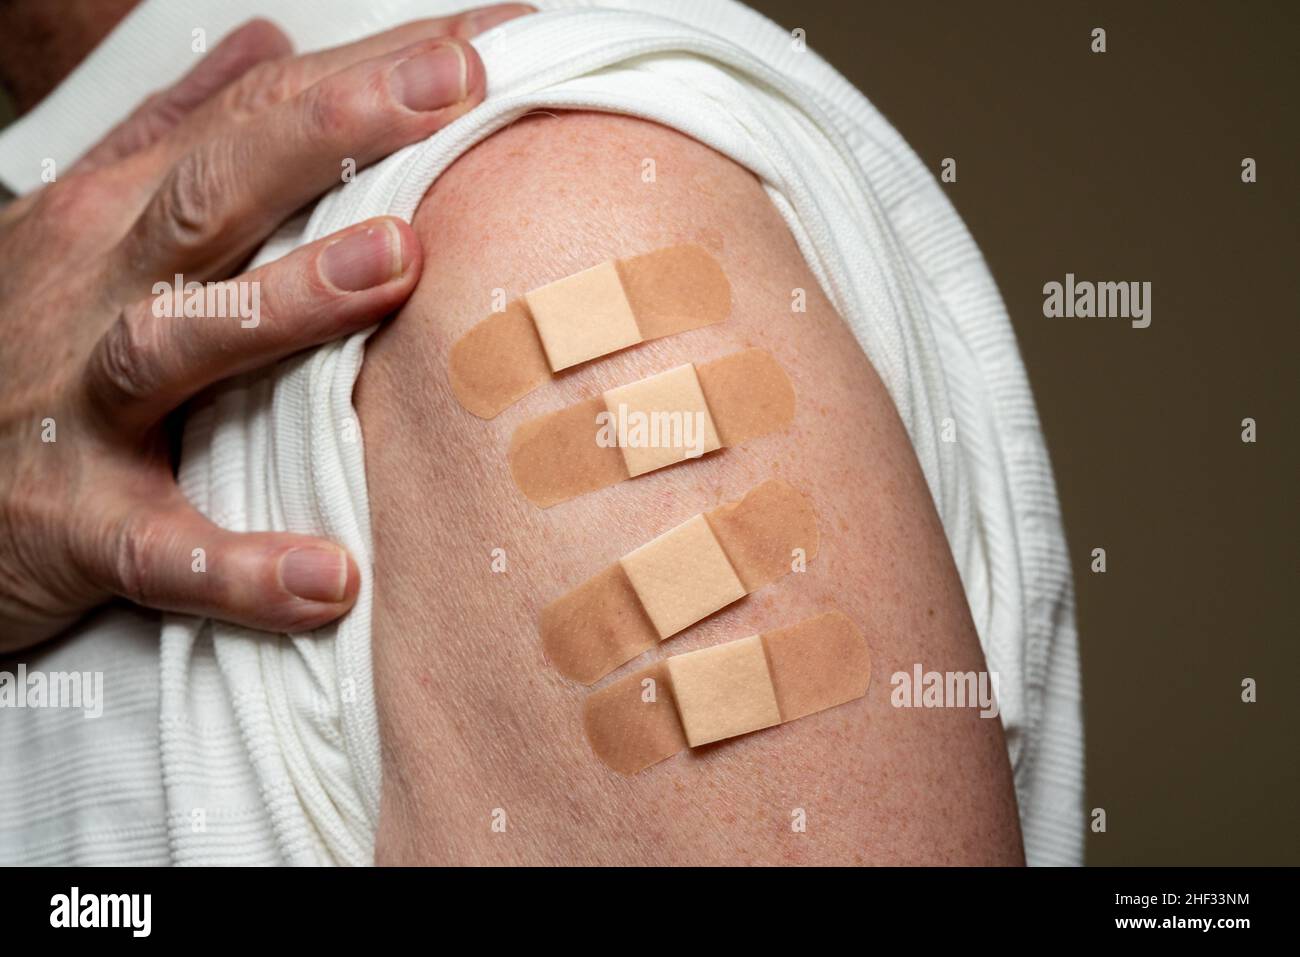 Manchon d'homme caucasien âgé pour montrer le quatrième vaccin de rappel contre le coronavirus dans l'épaule.Concept avec quatre bandages séparés pour les prises de vue Banque D'Images